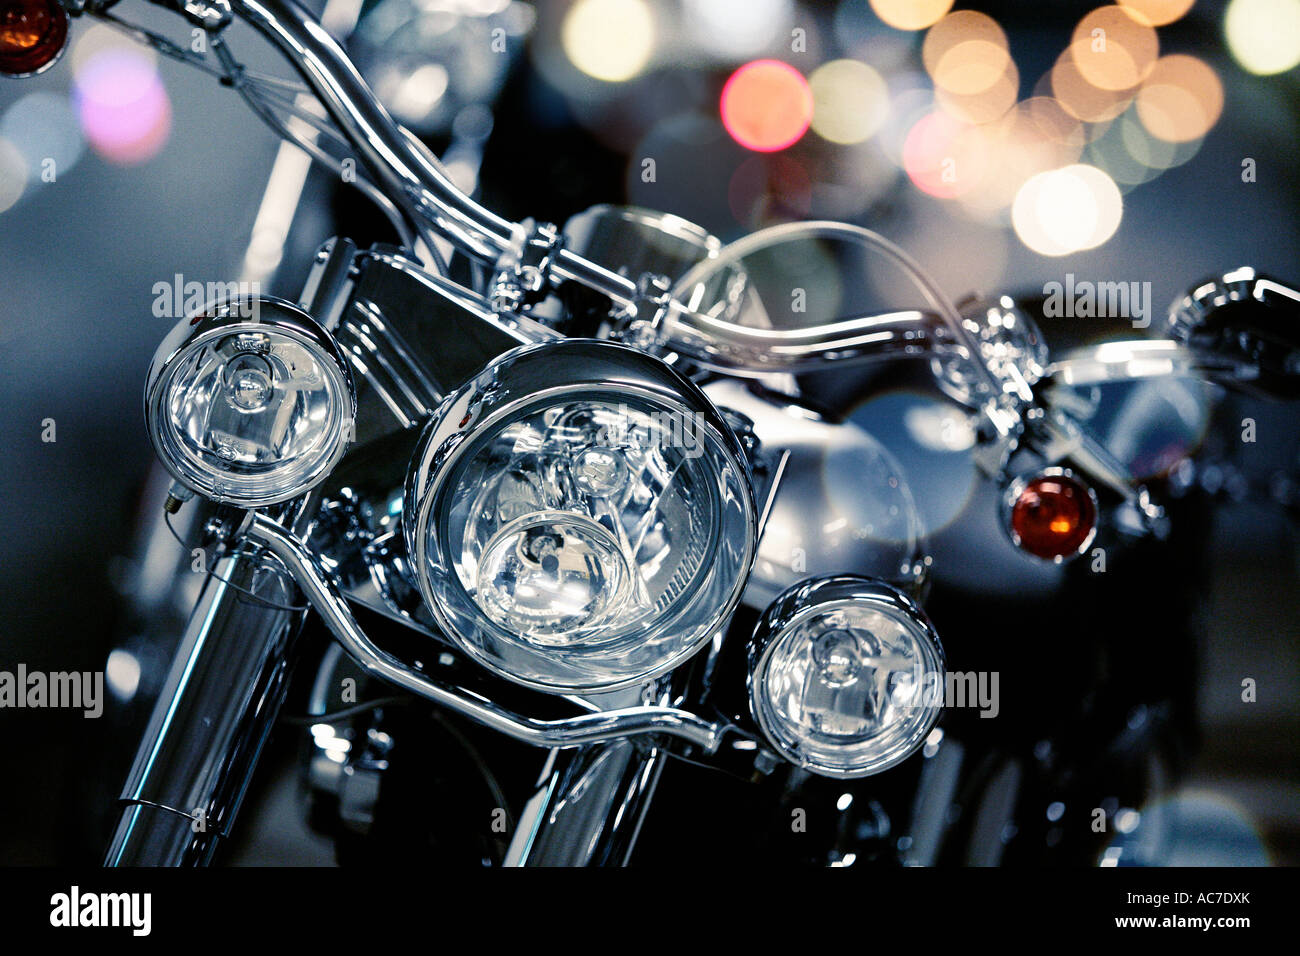 Détail de Harley Davidson dans la nuit Banque D'Images